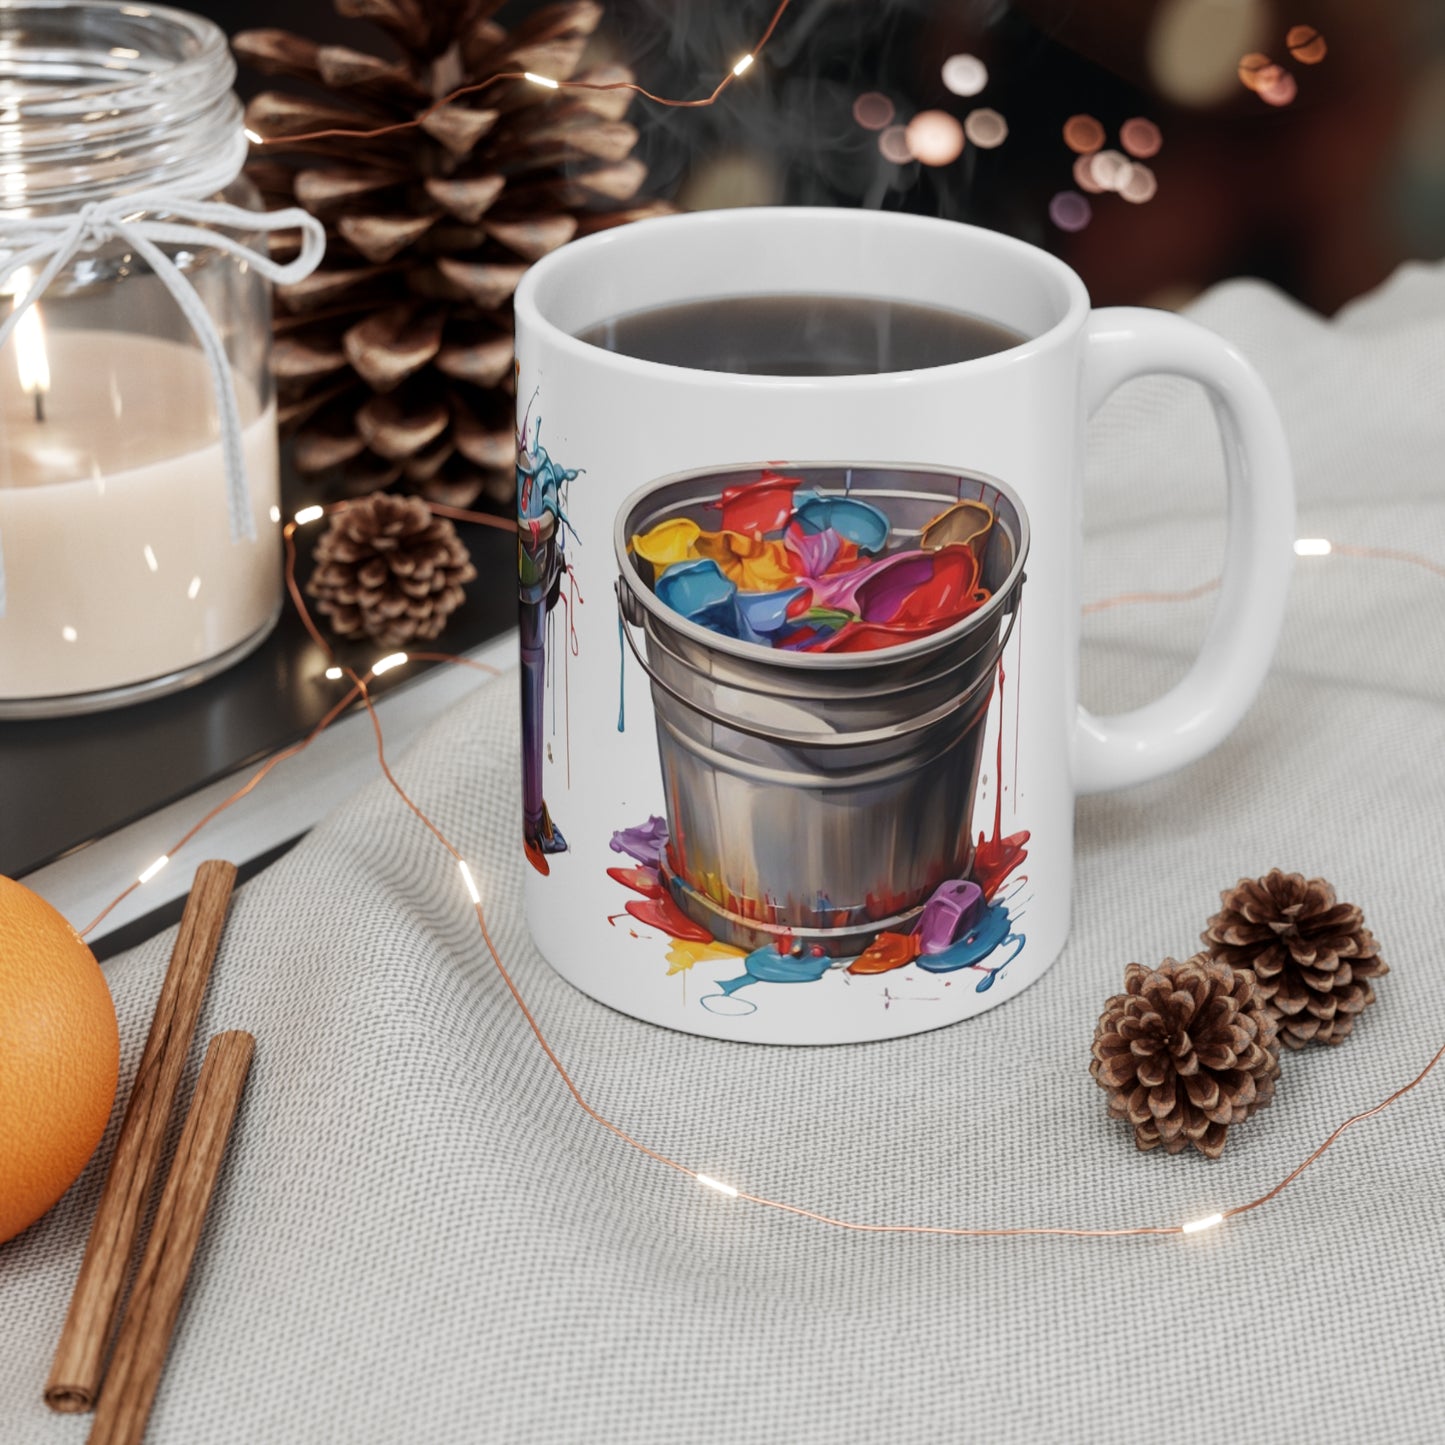 Messy Colourful Bucket's Mug - Ceramic Coffee Mug 11oz